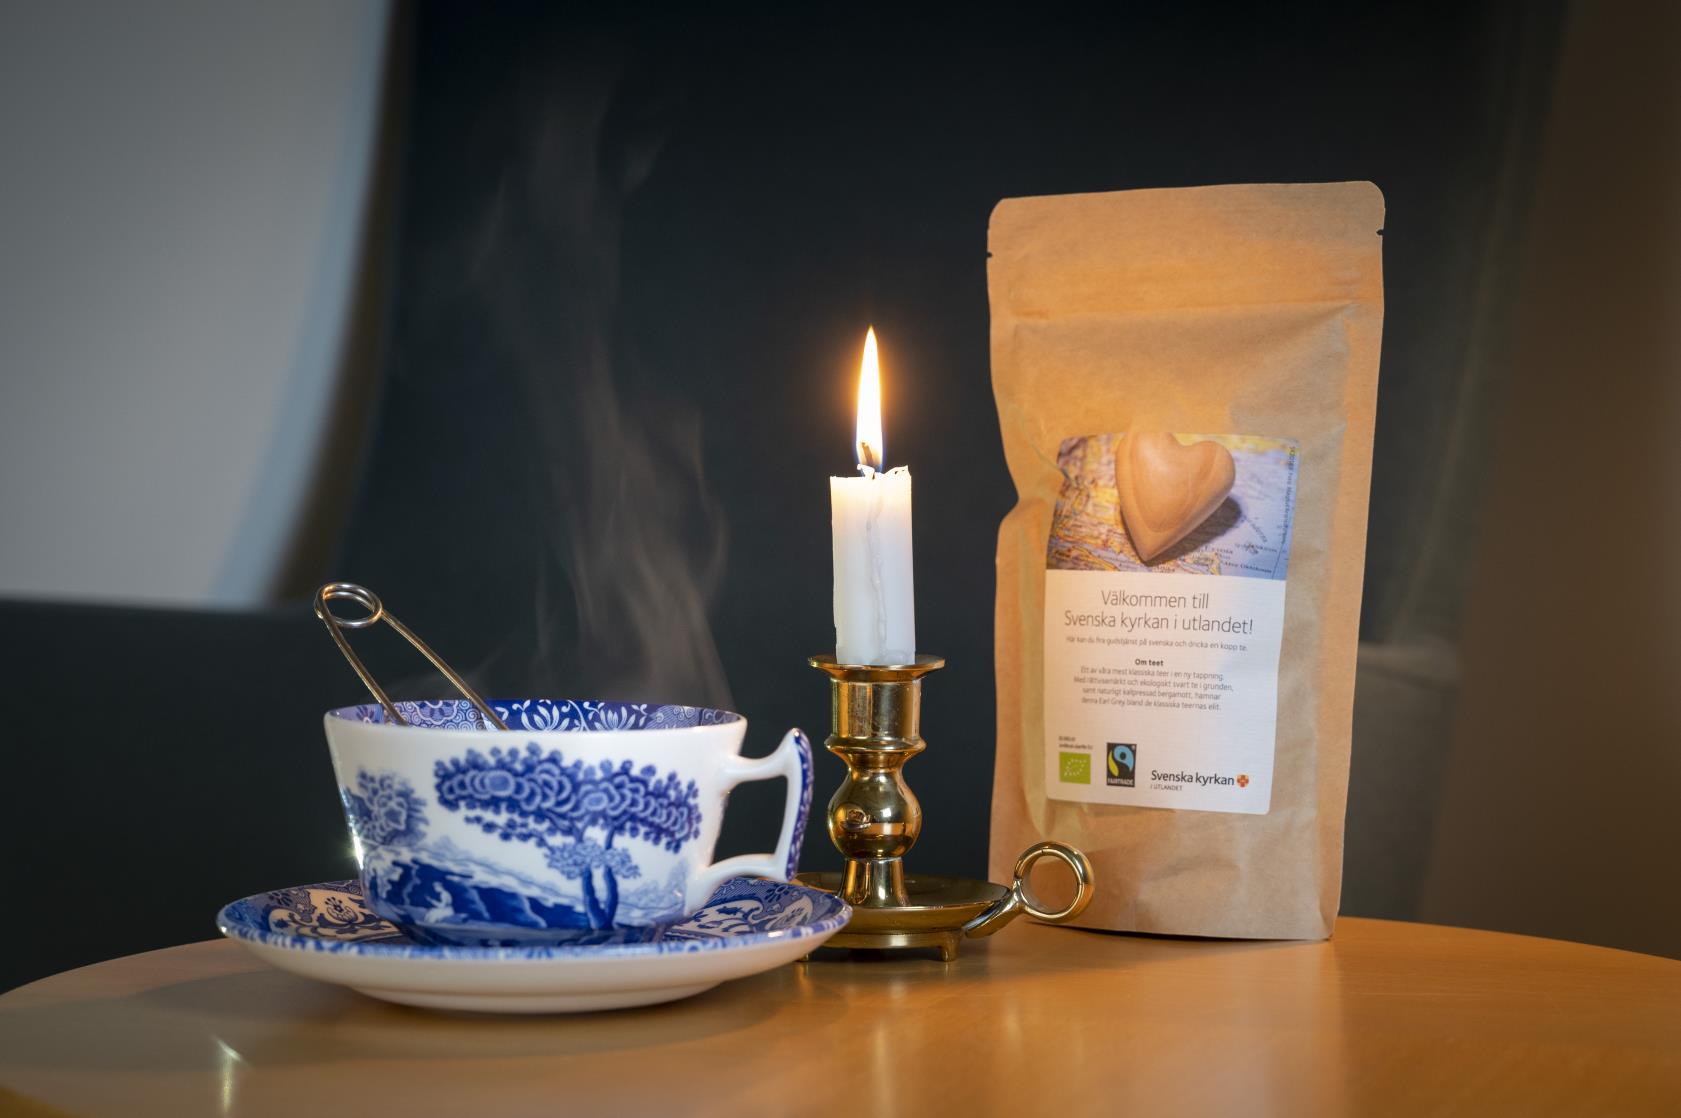 En rykande tekopp, ett tänt stearinljus och en påse med te från Svenska kyrkan står på ett bord.